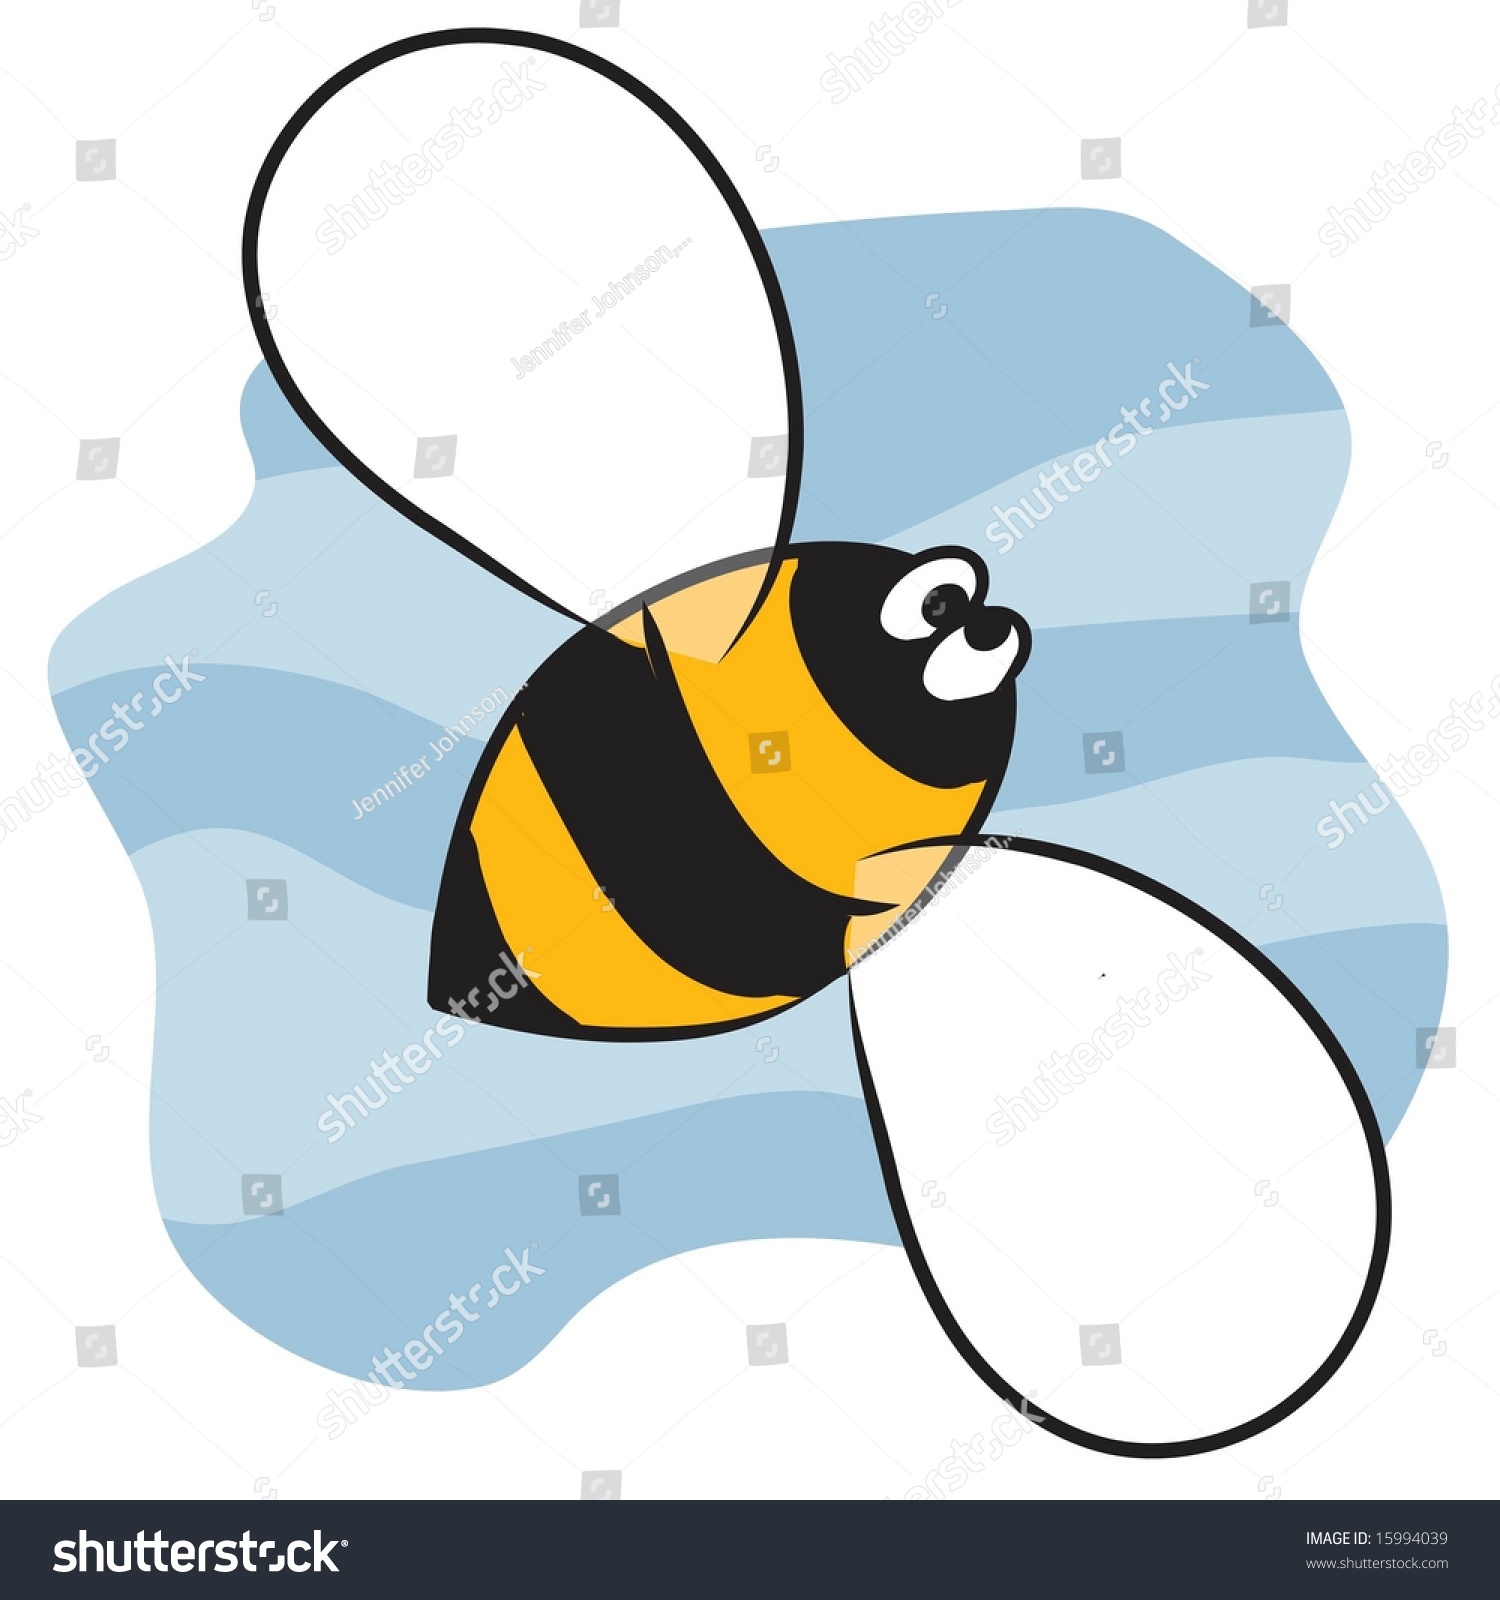 Vector Design Of Cute Honey Bee - 15994039 : Shutterstock
